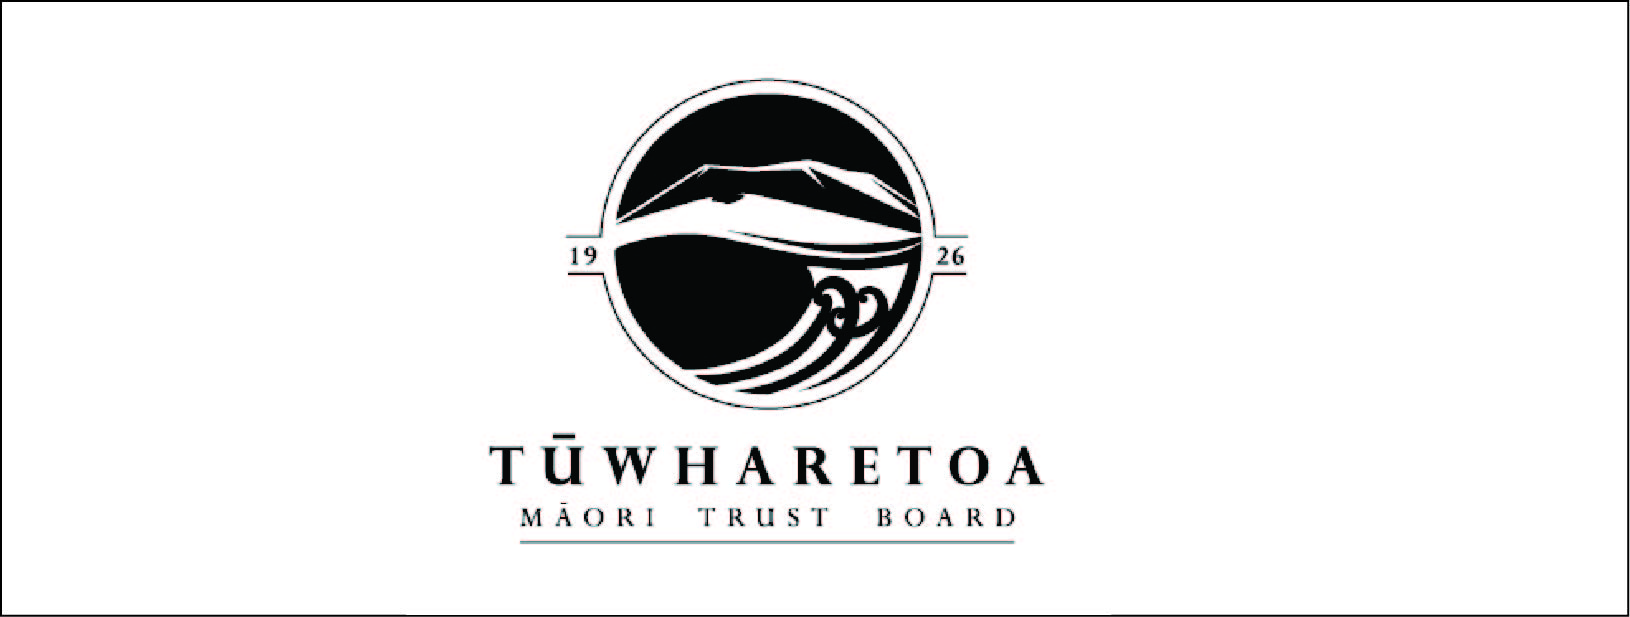 Tuwharetoa Maori Trust Board